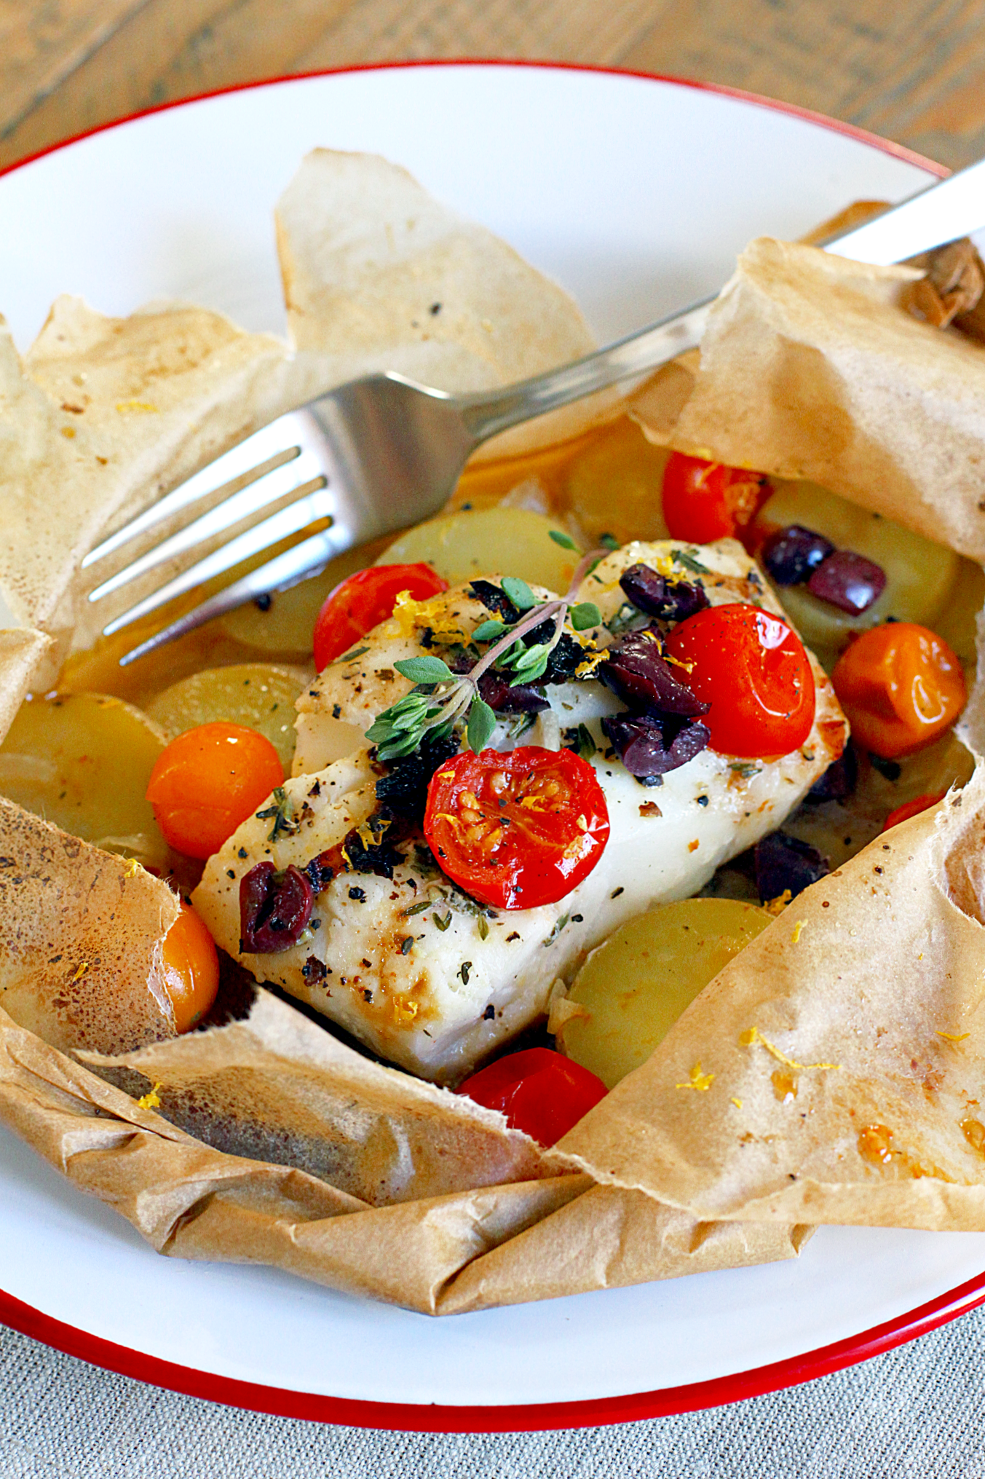 Nướng theo cách này sẽ giúp giữ trọn hương vị của các loại hải sản và rau củ quả đi kèm.